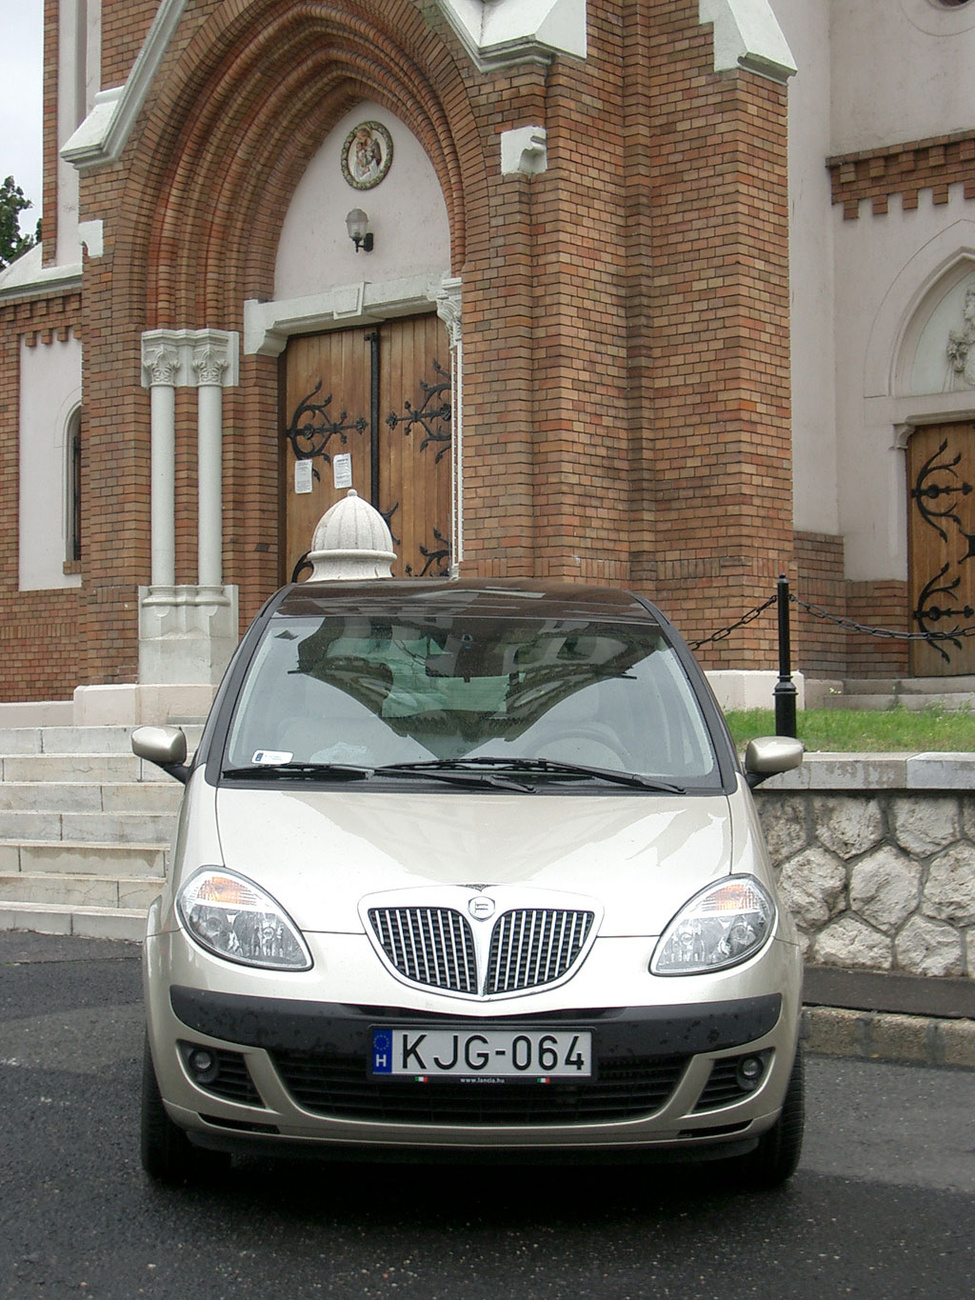 100 éve született a Lancia